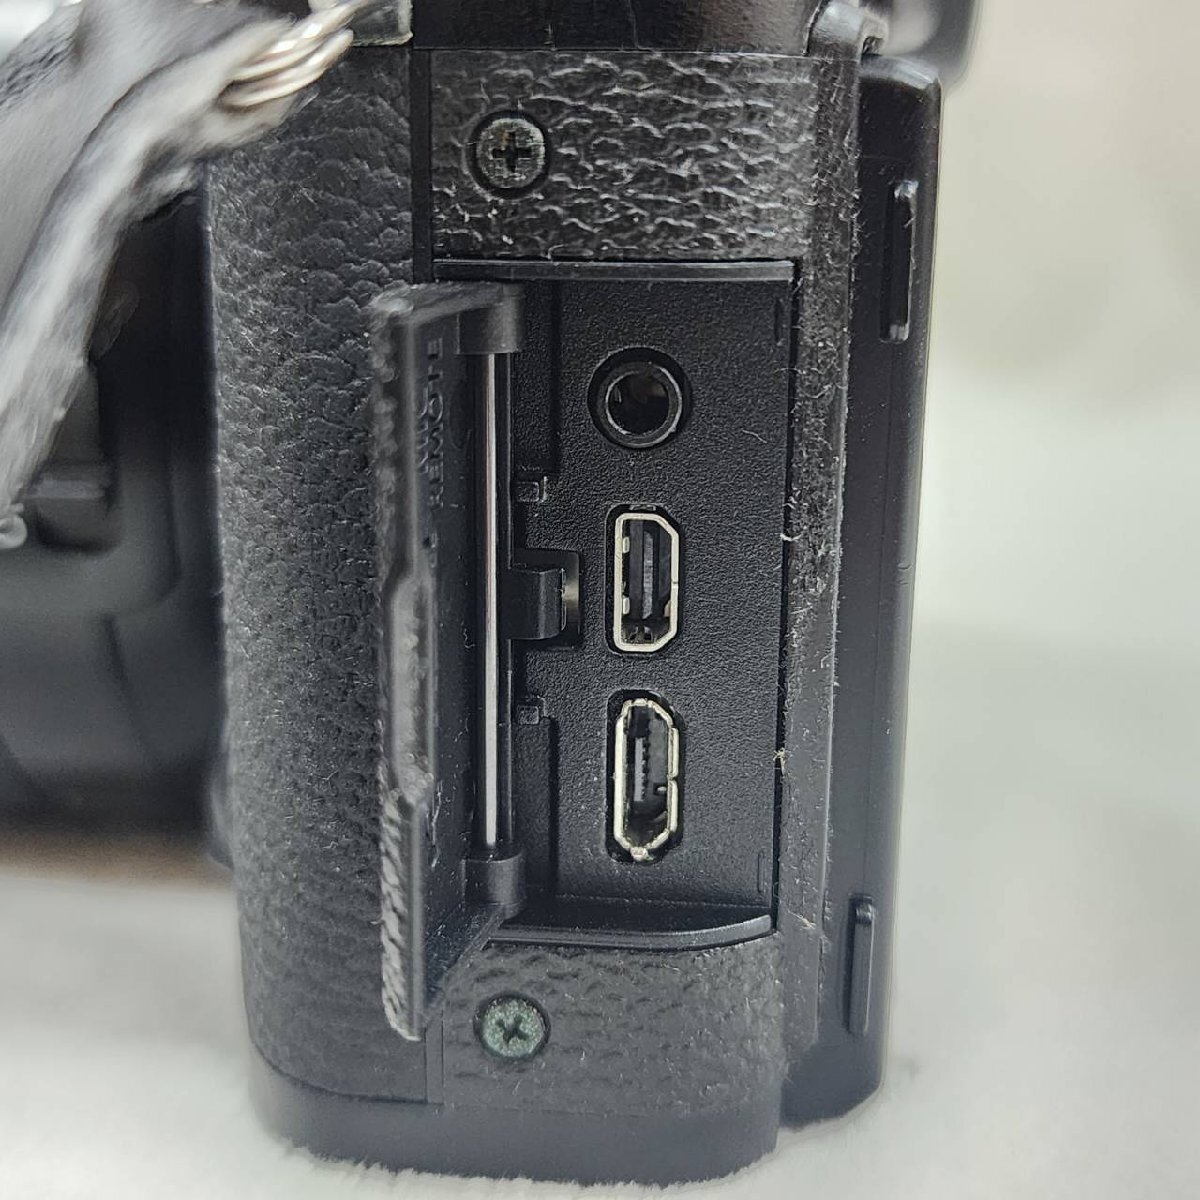 FUJIFILM Fuji film X-T10 линзы 18-55mm F2.8-4 принадлежности есть рабочее состояние подтверждено беззеркальный однообъективный зеркальный камера 